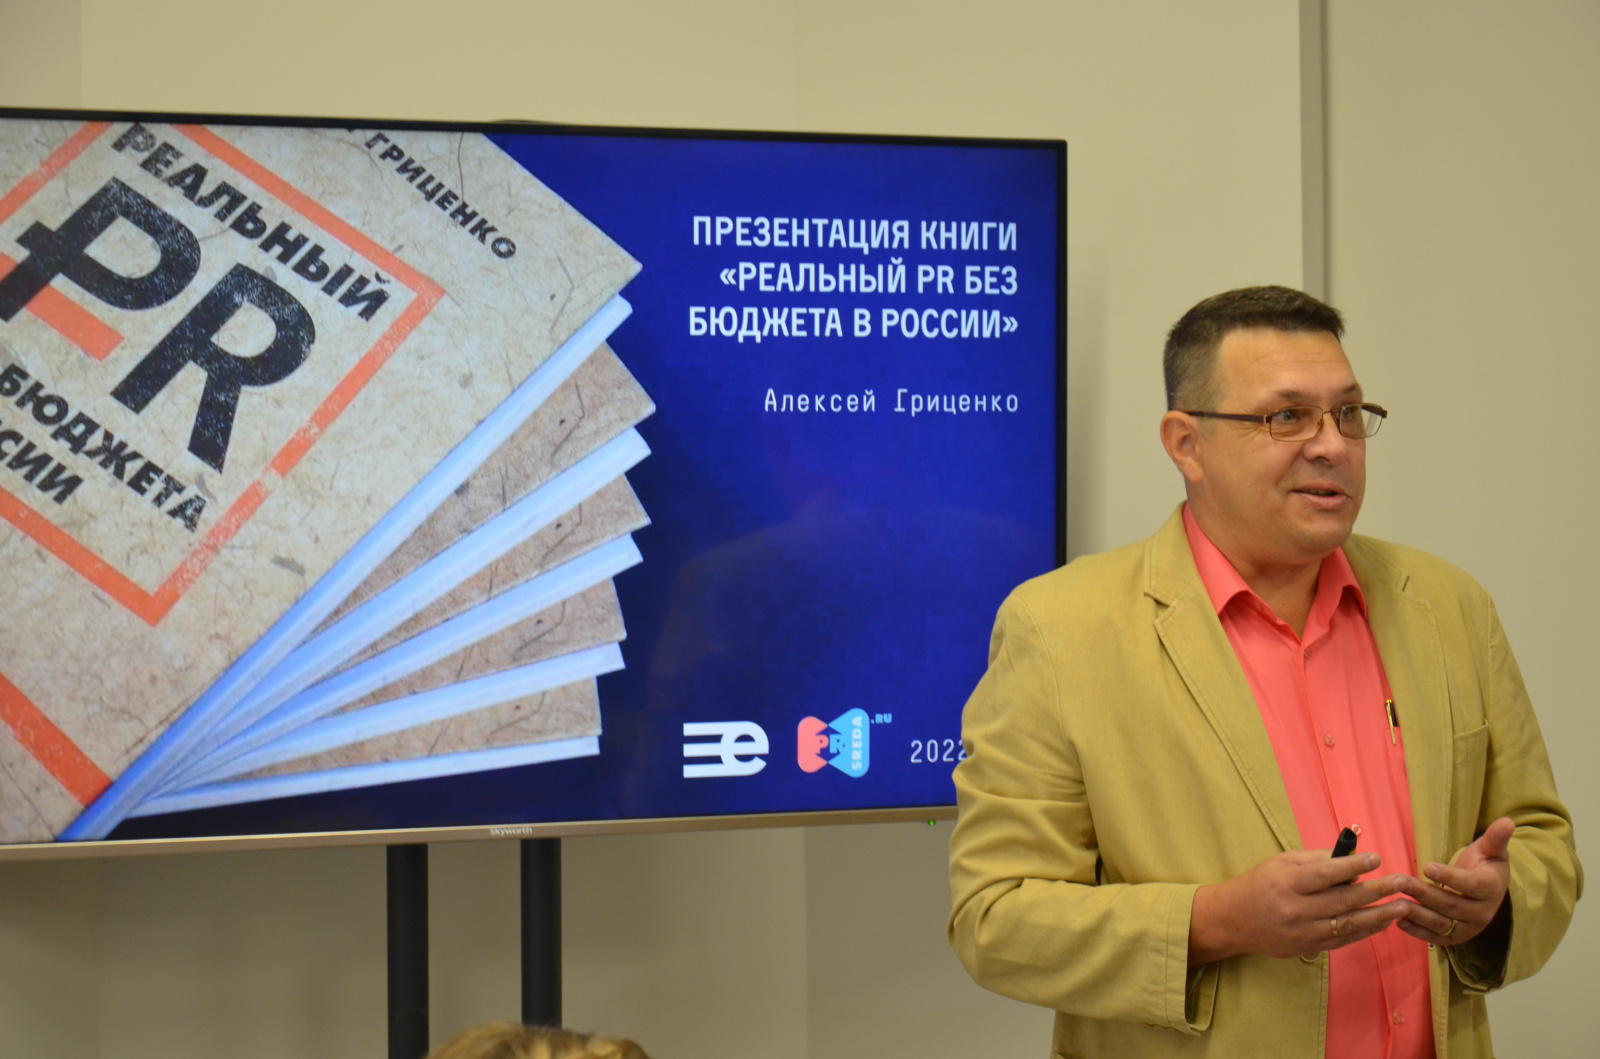 В международном холдинге «ЕвроМедиа» состоялась презентация книги Алексея Гриценко «Реальный PR без бюджета в России». ЕвроМедиа